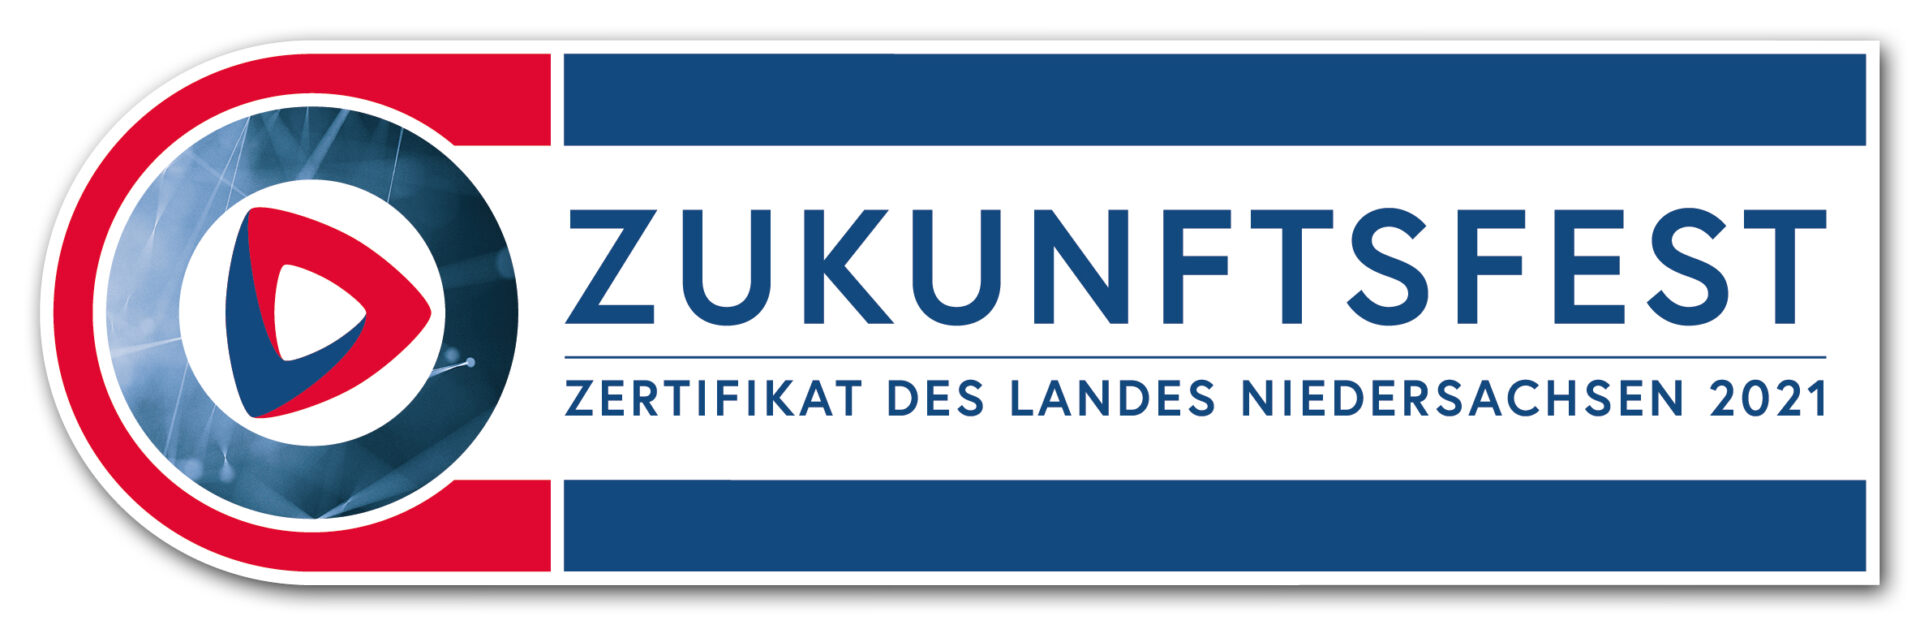 Logo Zukunftsfest Zertifikat des Landes Niedersachsen 2021